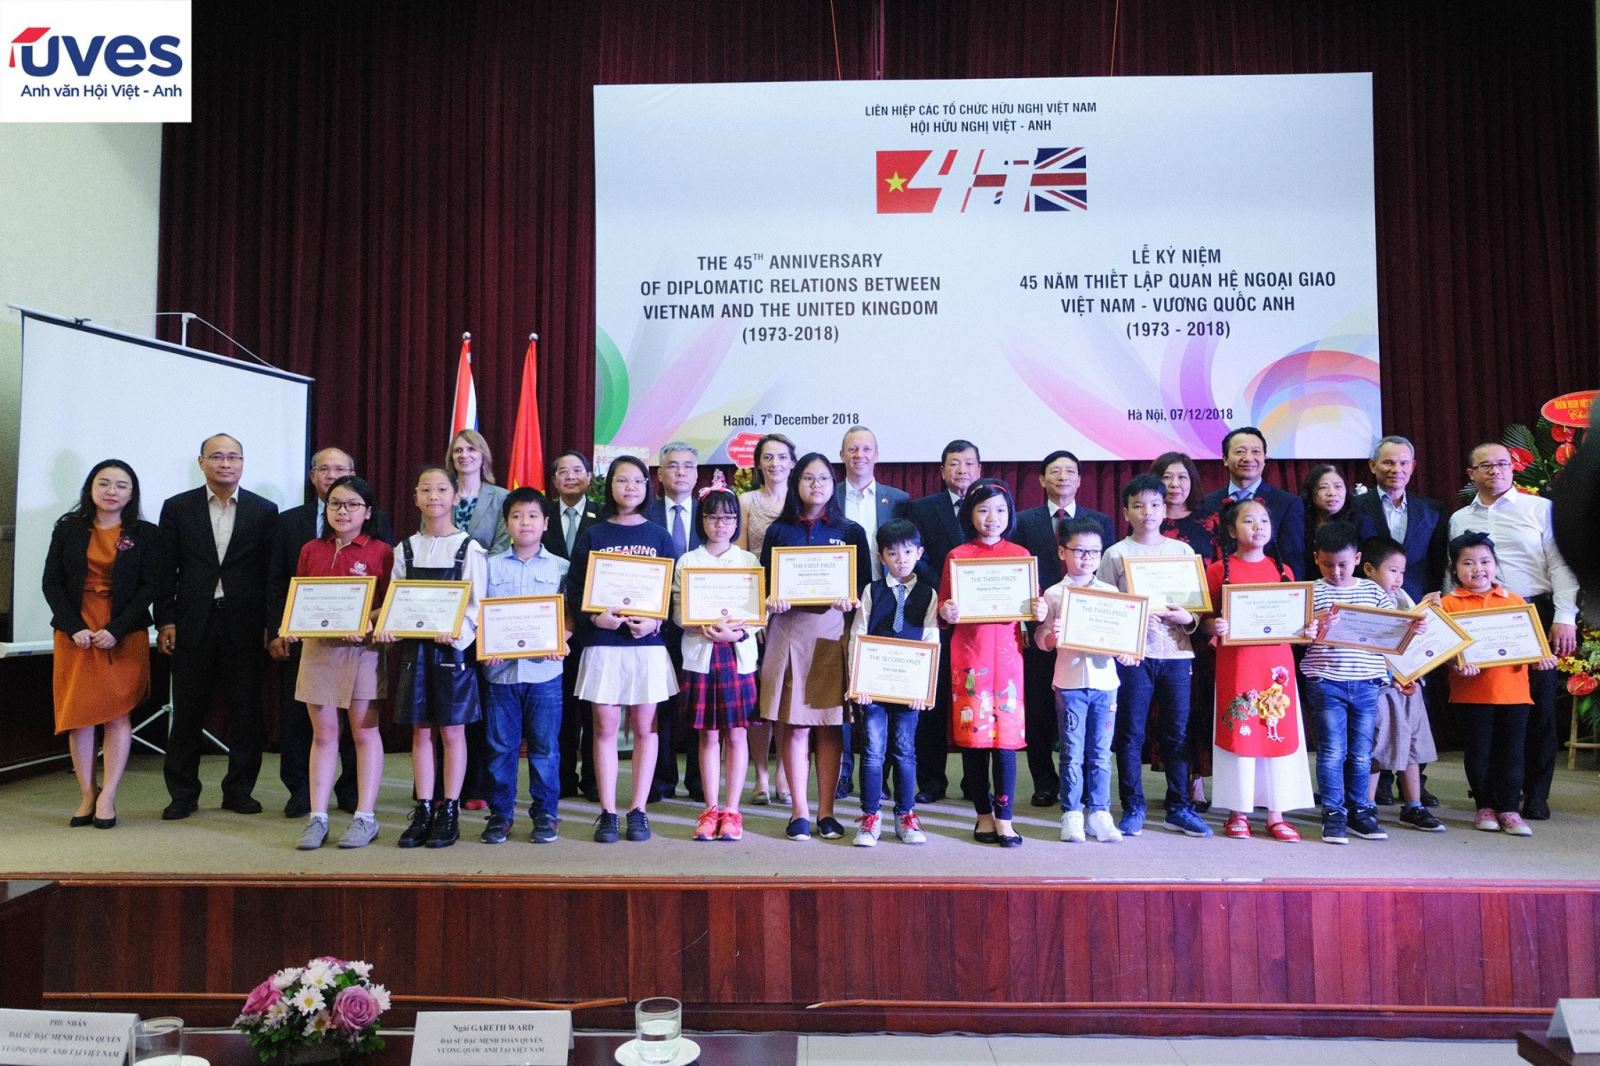 Các thi sinh đạt giải thưởng của cuộc thi nhận bằng khen từ Ngài đại Sứ đặc mệnh toàn quyền Vương Quốc Anh tại Việt Nam - Ngài Gareth Ward